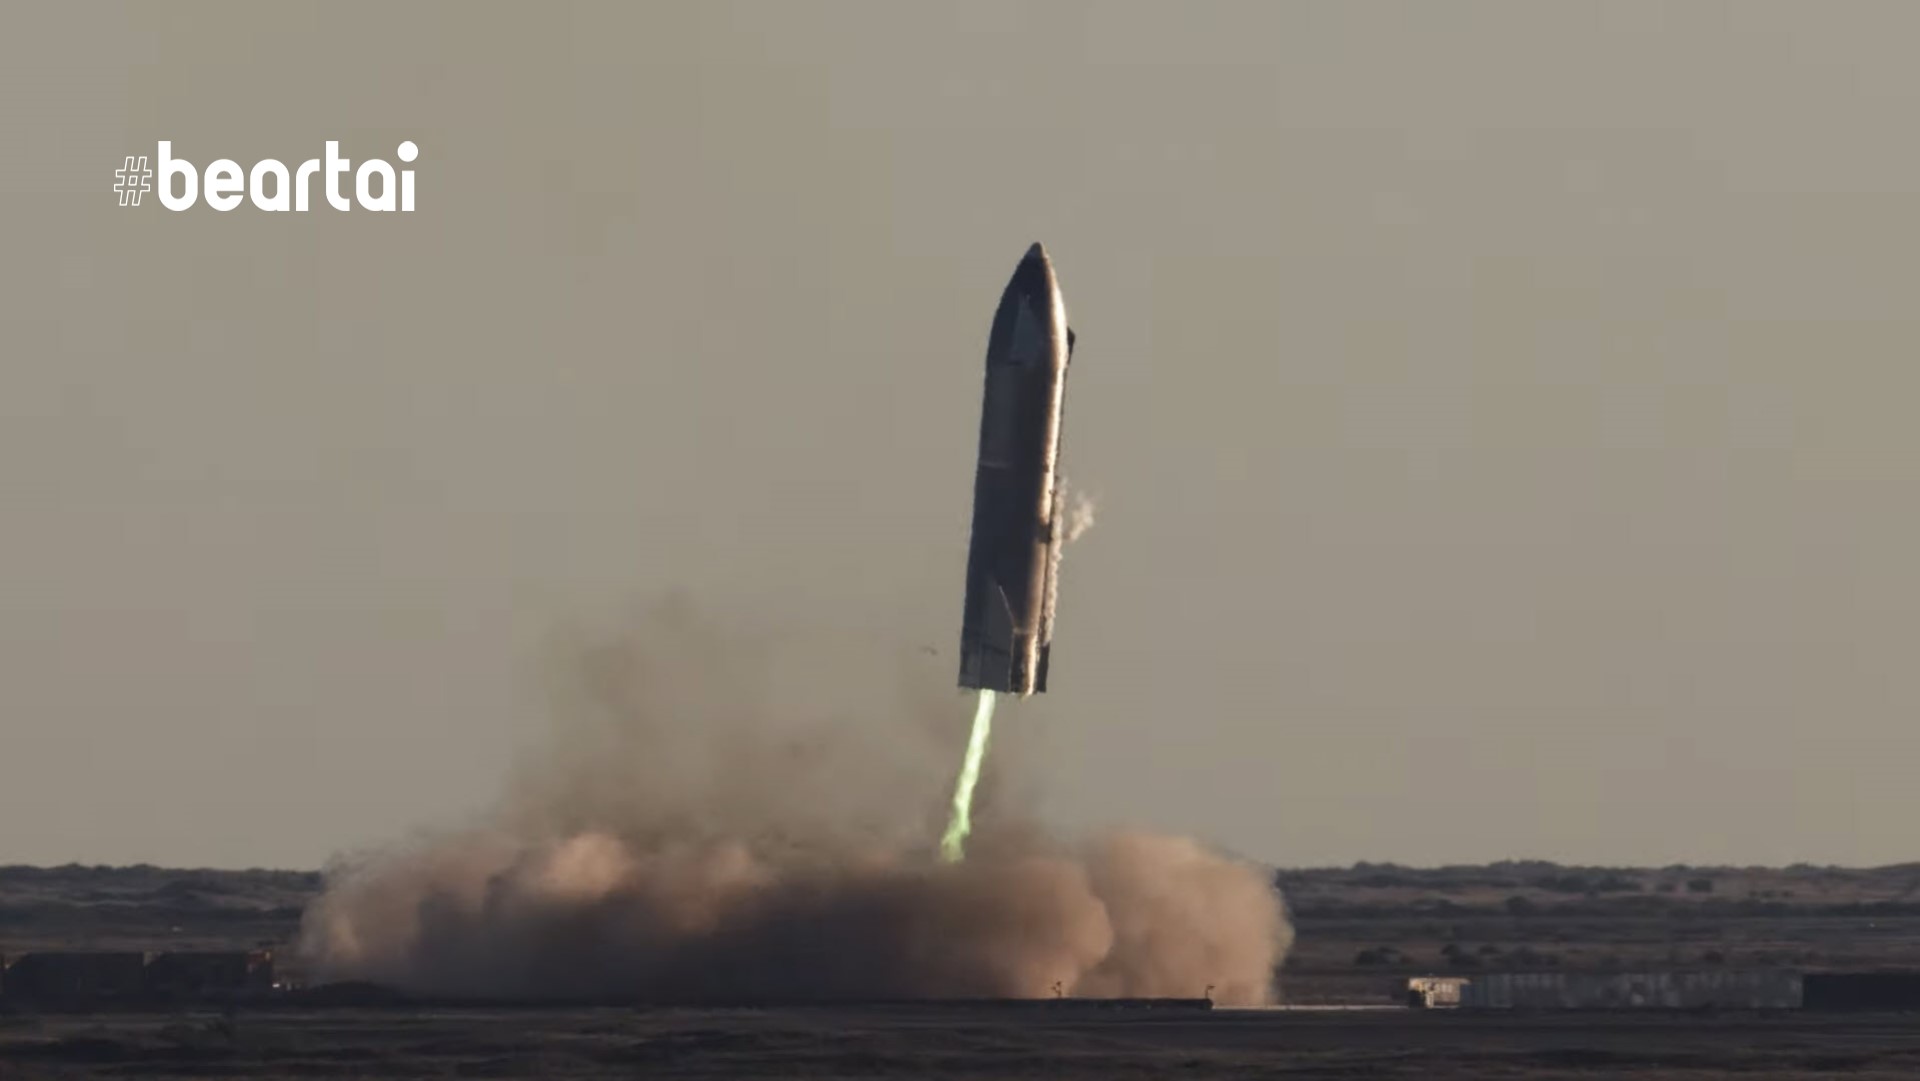 มันคือดี! SpaceX พอใจในการทดสอบบินระดับสูงของ SN8 จัดทำคลิปแสดงขั้นตอนทั้งหมดอีกครั้ง